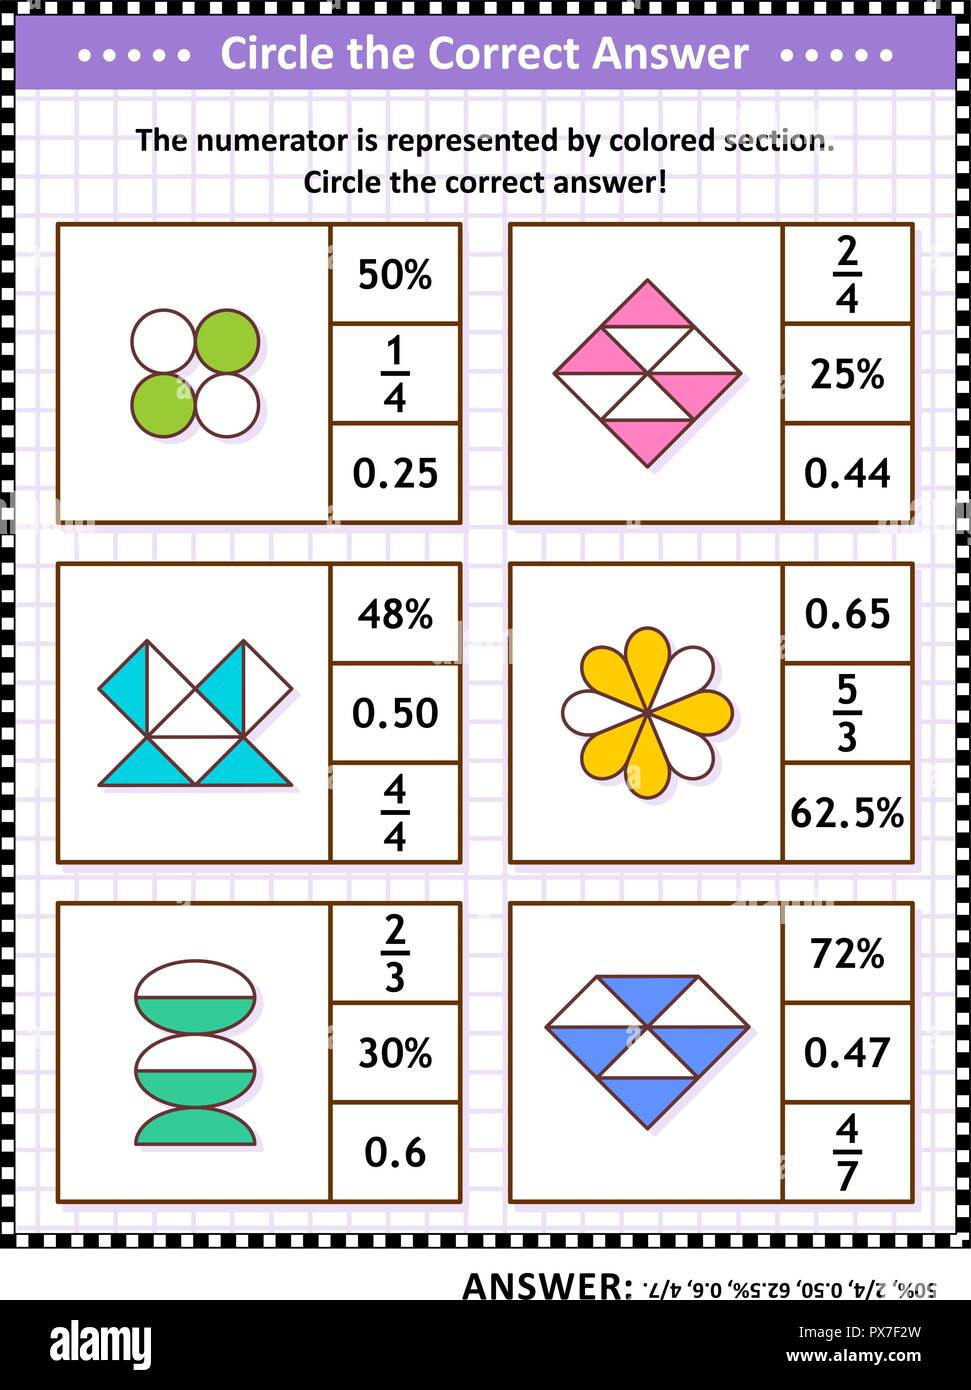 Le competenze matematiche formazione visual puzzle. Cerchiare la risposta corretta. Trovare il numero equivalente per ciascuna frazione pittorica di rappresentanza. Risposta inclusa. Illustrazione Vettoriale